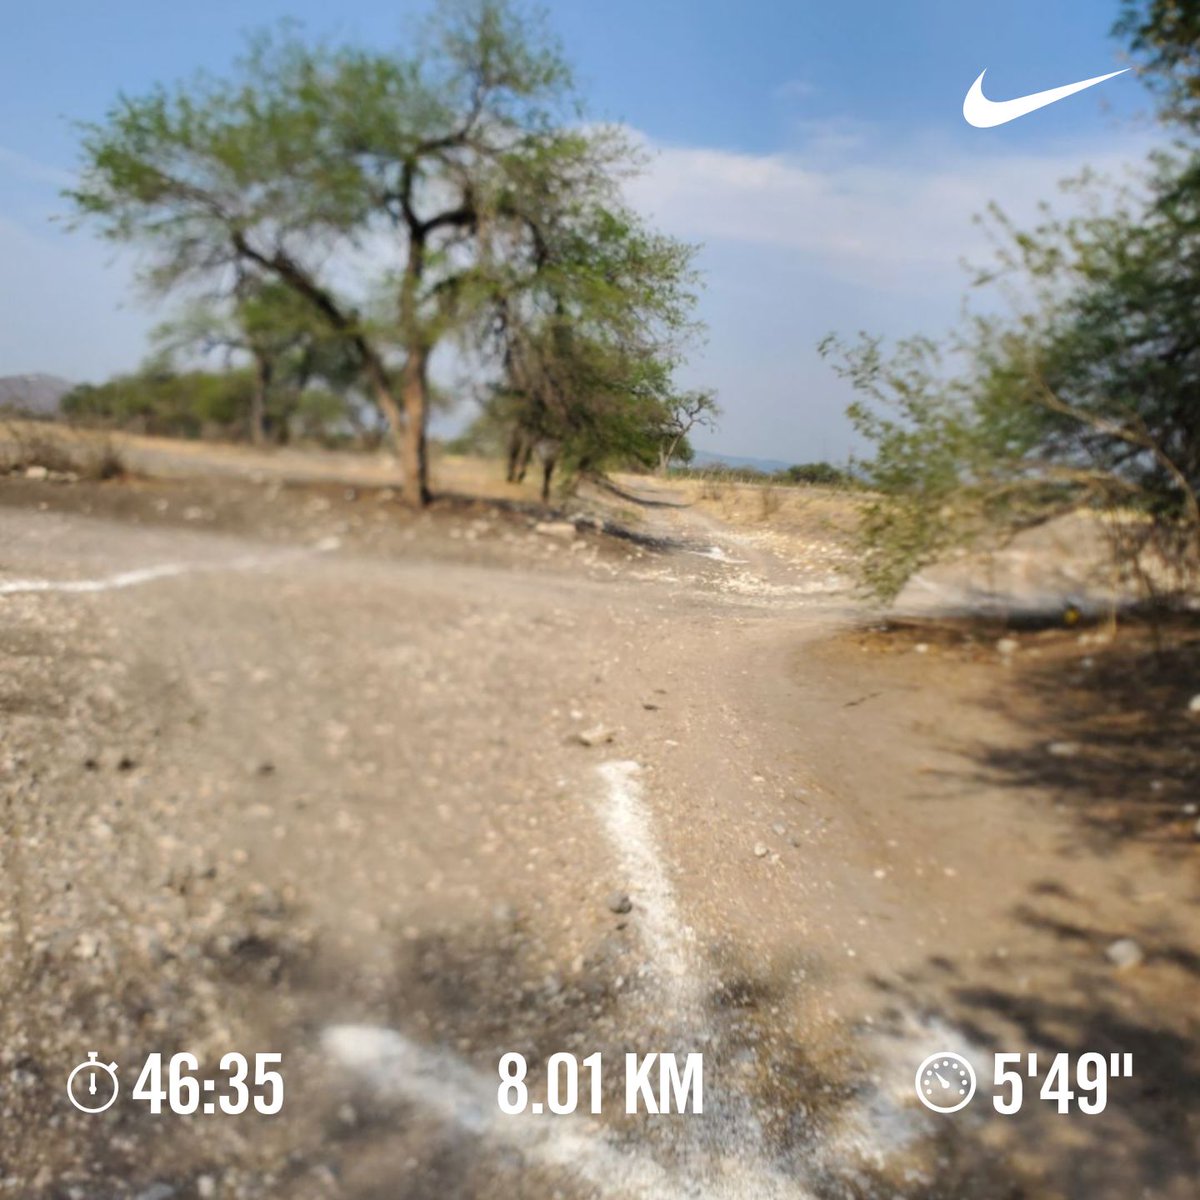 #1DeMayo descanso laboral y aprovechando la tarde para correr 8 kilometros de acción 🏃🏻‍♂️☀️
#comunicarunners 
#SumandoKMx 
#aquiyasecorrio